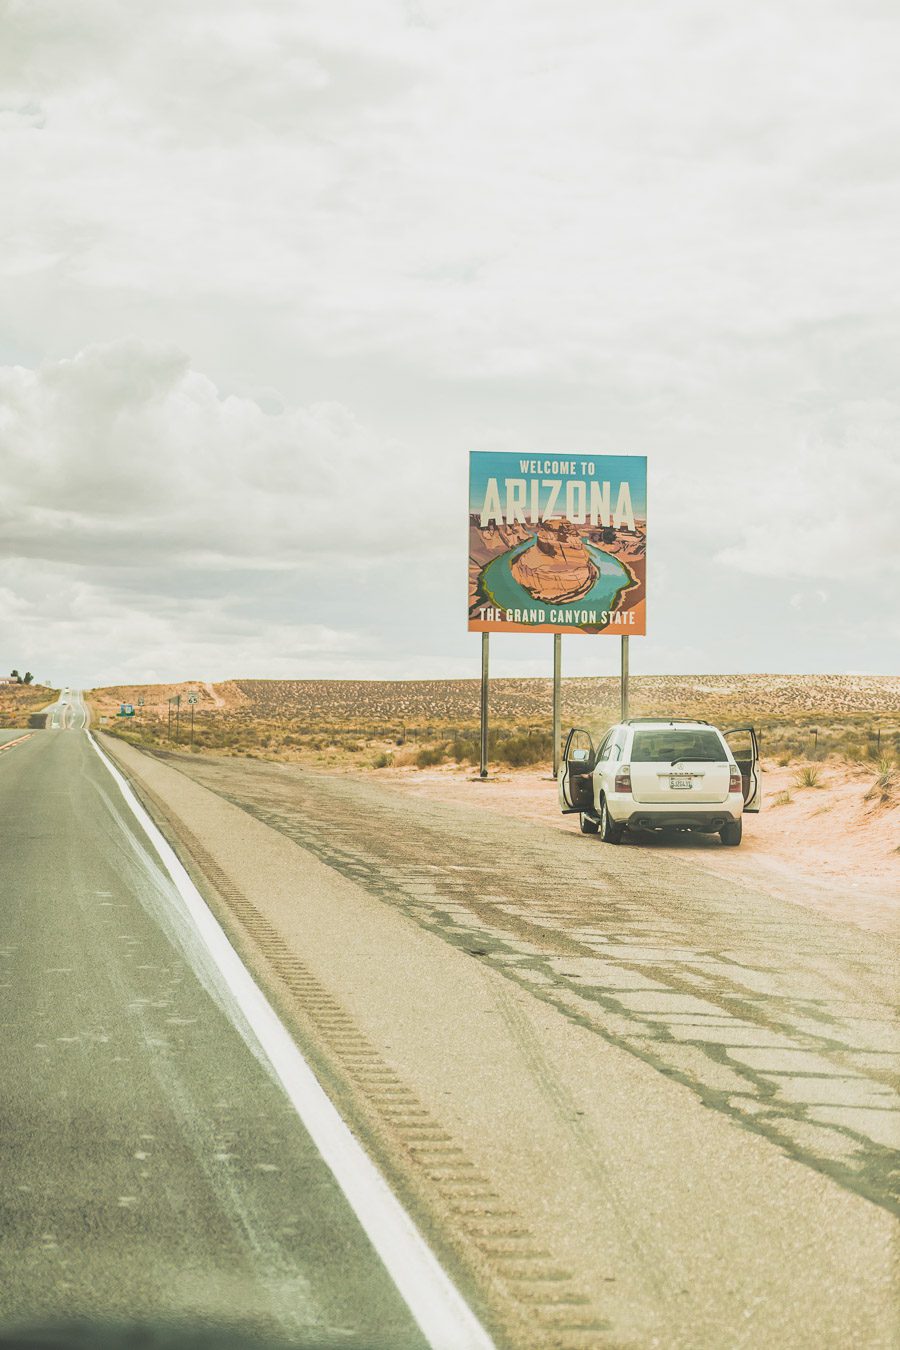 Embarquez pour un voyage de découverte et d'aventure alors que vous embarquez pour un road trip dans l'ouest américain de 2 semaines ! Explorez certains des paysages les plus époustouflants de l'Ouest américain. Vous visiterez des villes dynamiques, vous immergerez dans la culture unique de la région. Avec de nombreuses activités, attractions et merveilles naturelles à explorer comme Yellowstone, Las Vegas ou encore la route 66, ce sera à coup sûr un road trip inoubliable !